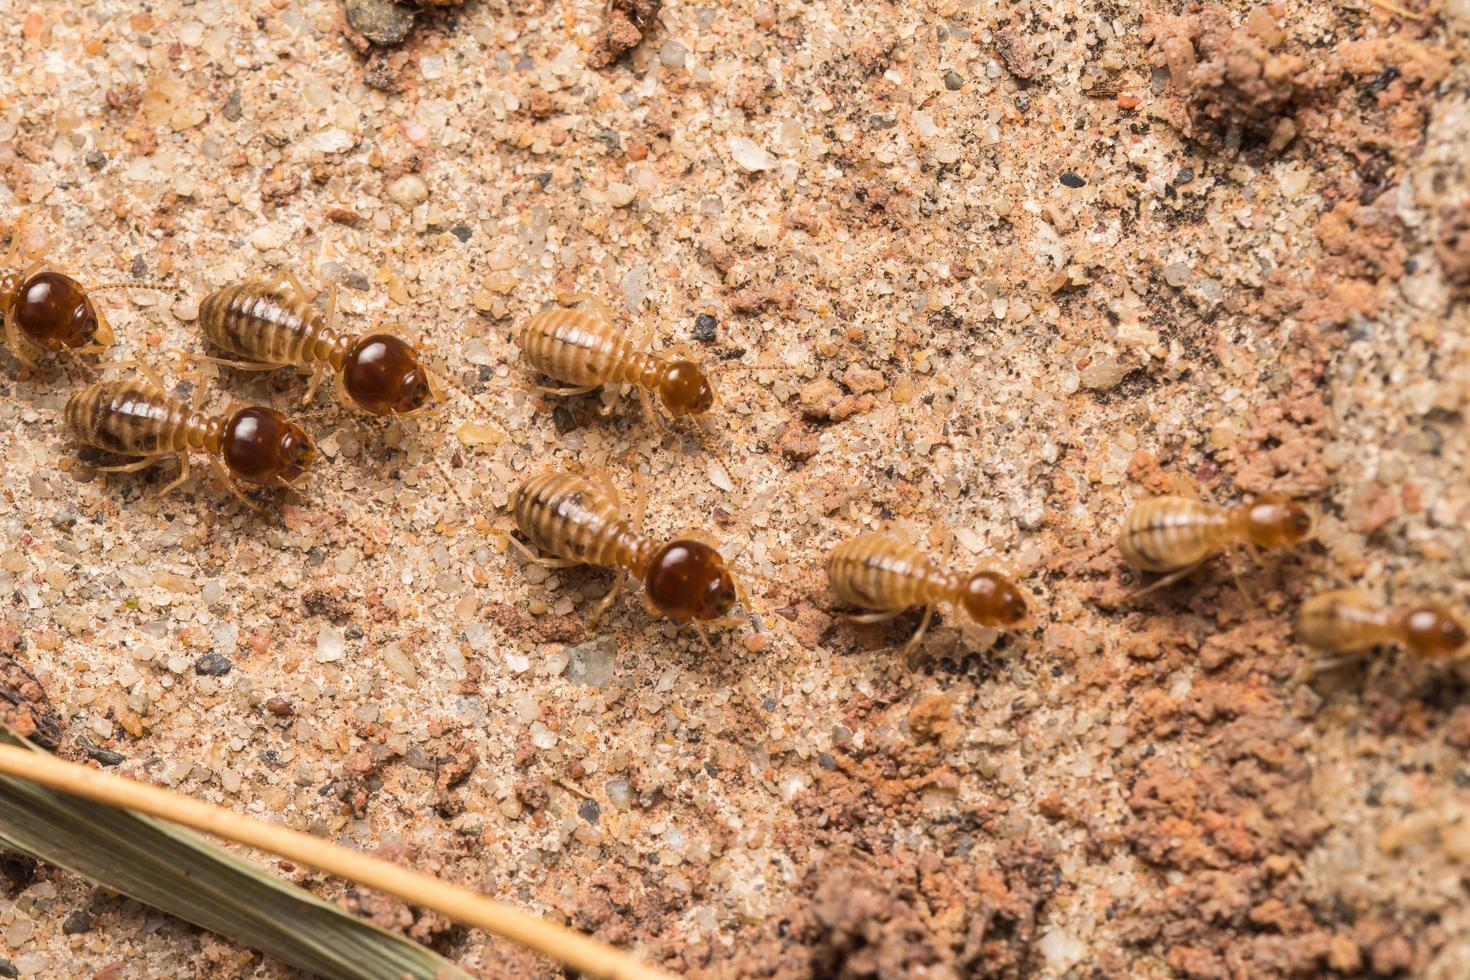 Termiten helfen beim Entladen von Holzspänen. foto